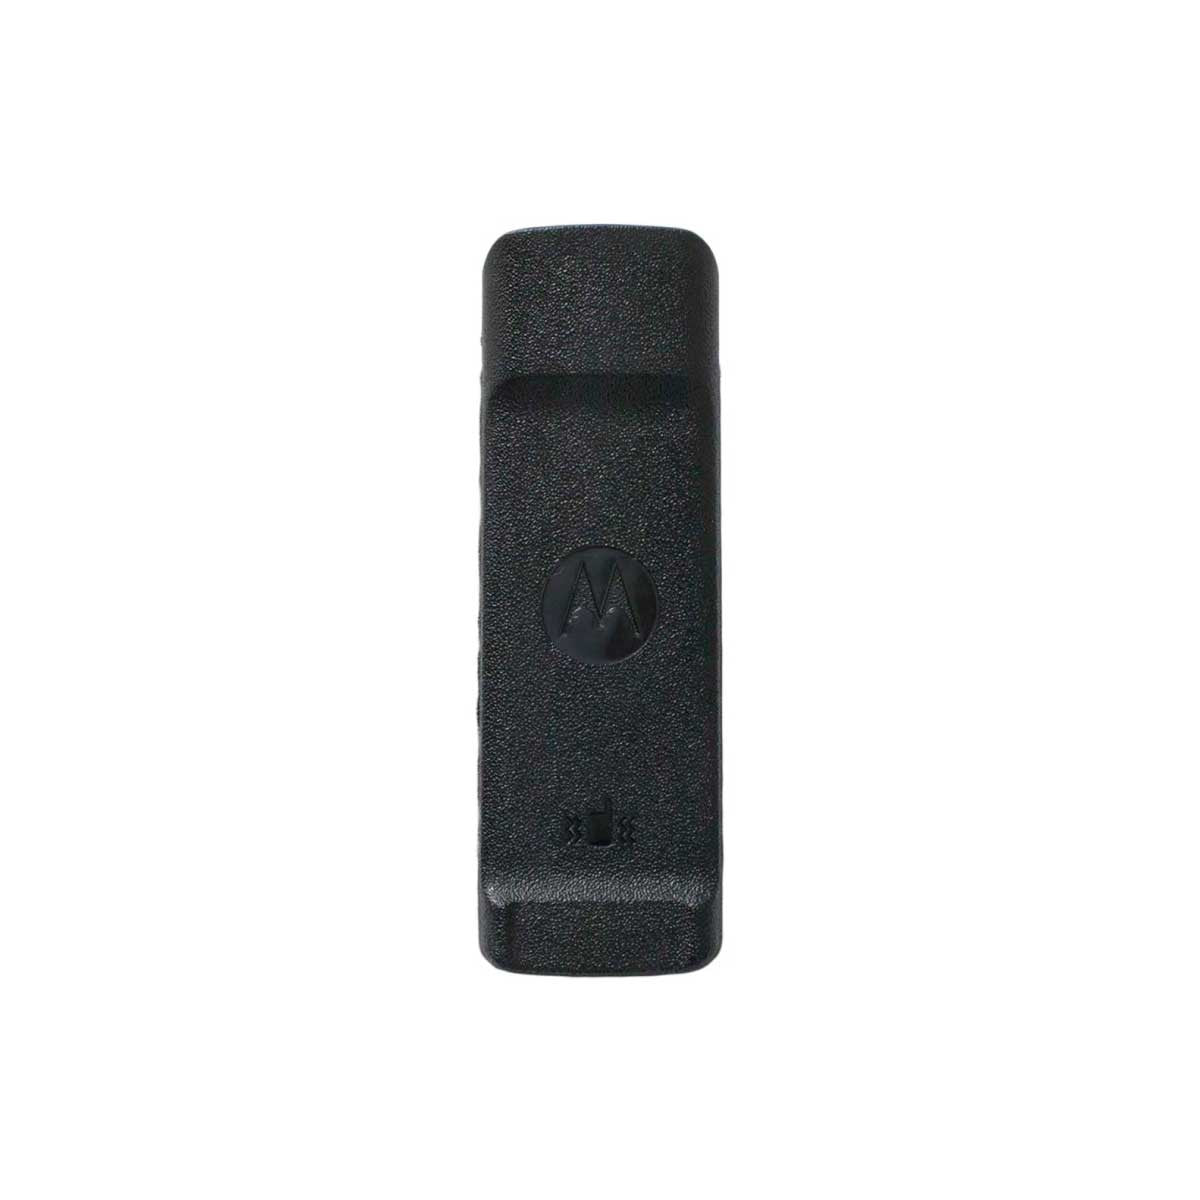 Motorola PMNN4488 - Vibrating Belt Clip For Battery